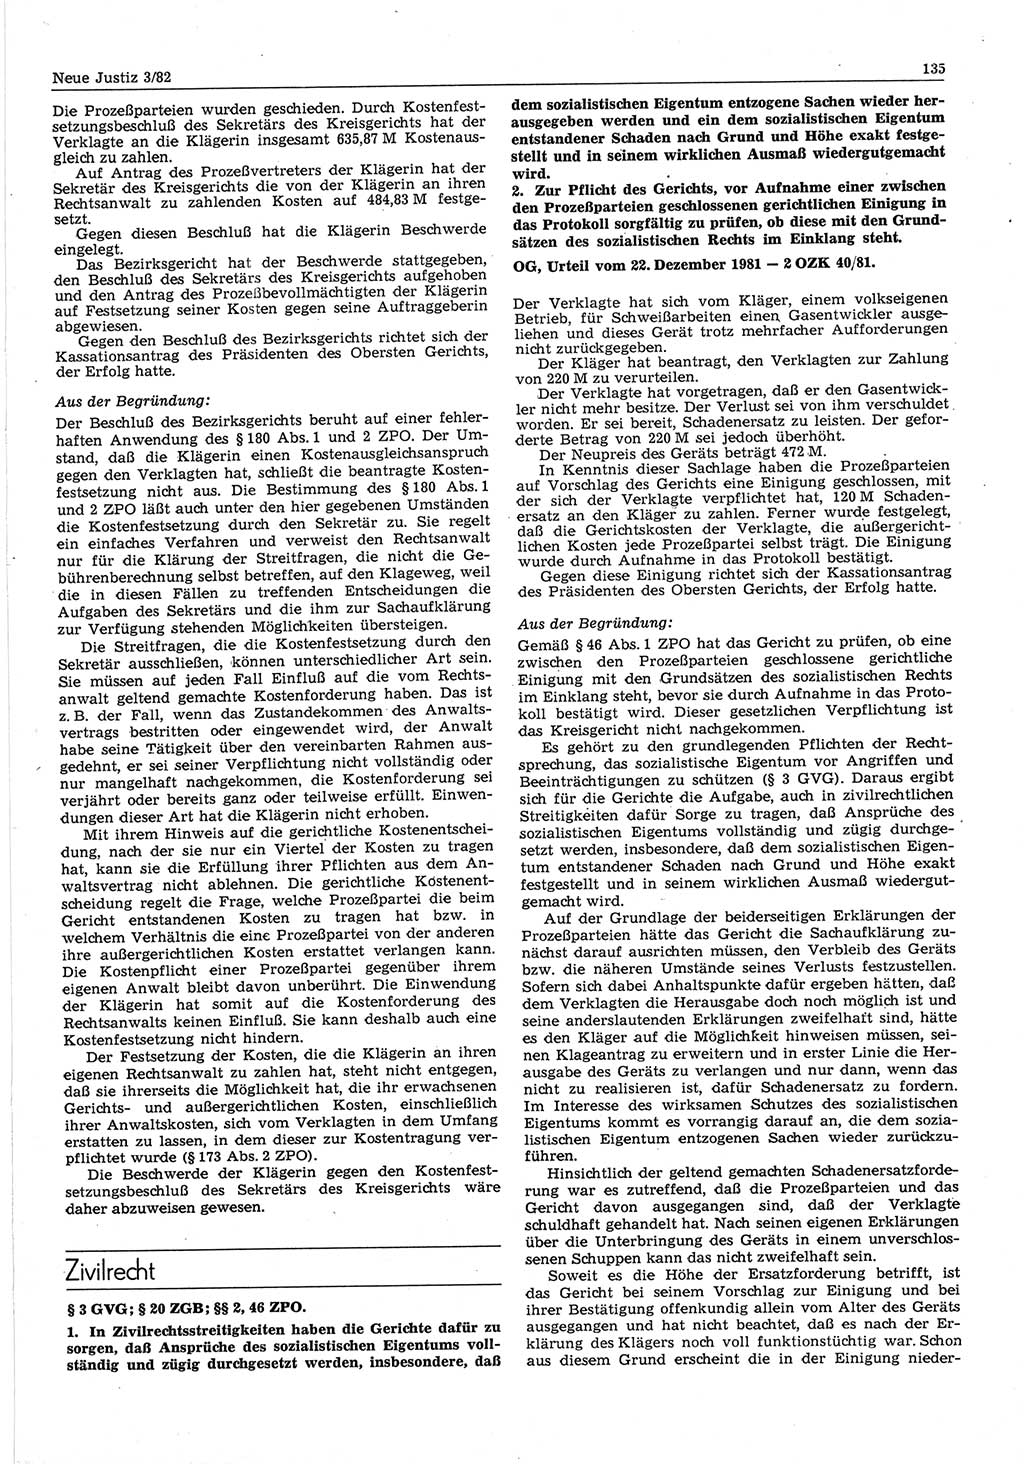 Neue Justiz (NJ), Zeitschrift für sozialistisches Recht und Gesetzlichkeit [Deutsche Demokratische Republik (DDR)], 36. Jahrgang 1982, Seite 135 (NJ DDR 1982, S. 135)